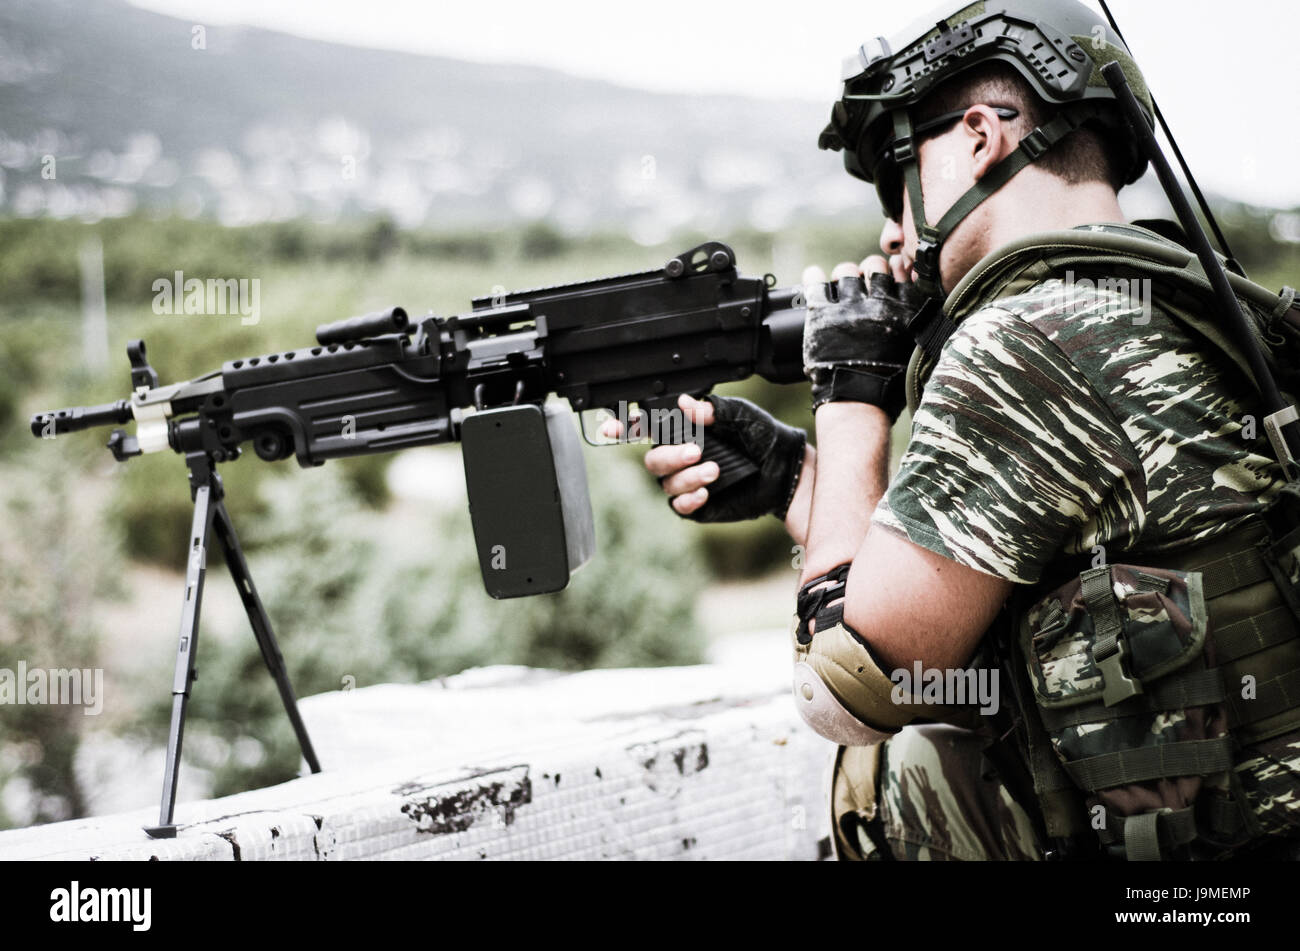 Objectif forêt cible contexte machinegunner vietnam camouflage uniforme Banque D'Images